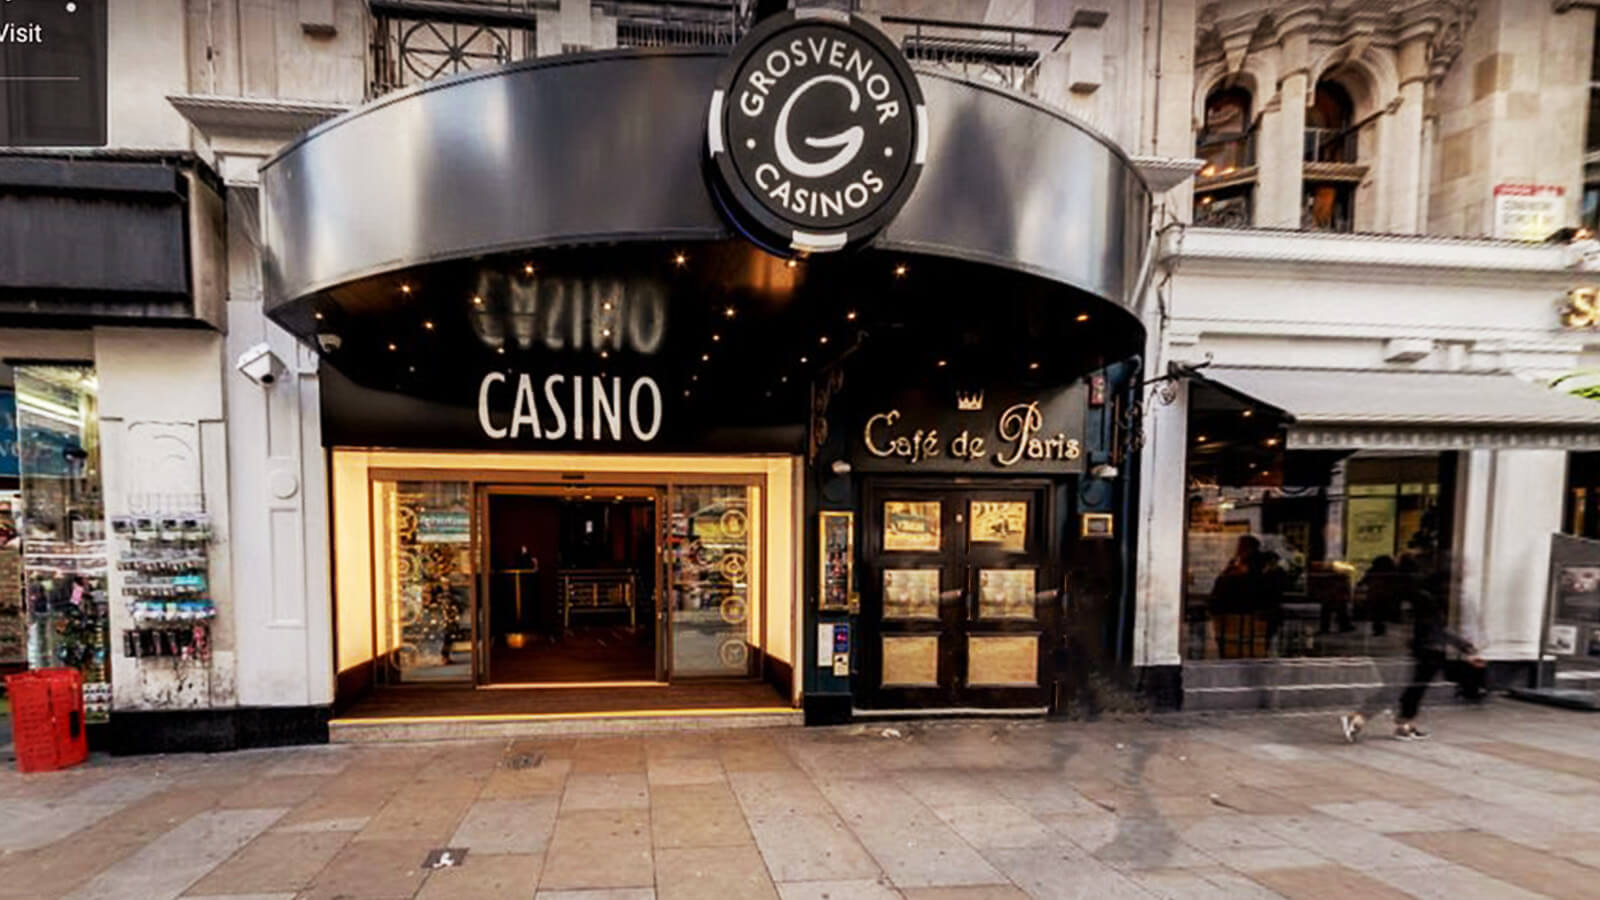 Grosvenor Casino The Rialto Review